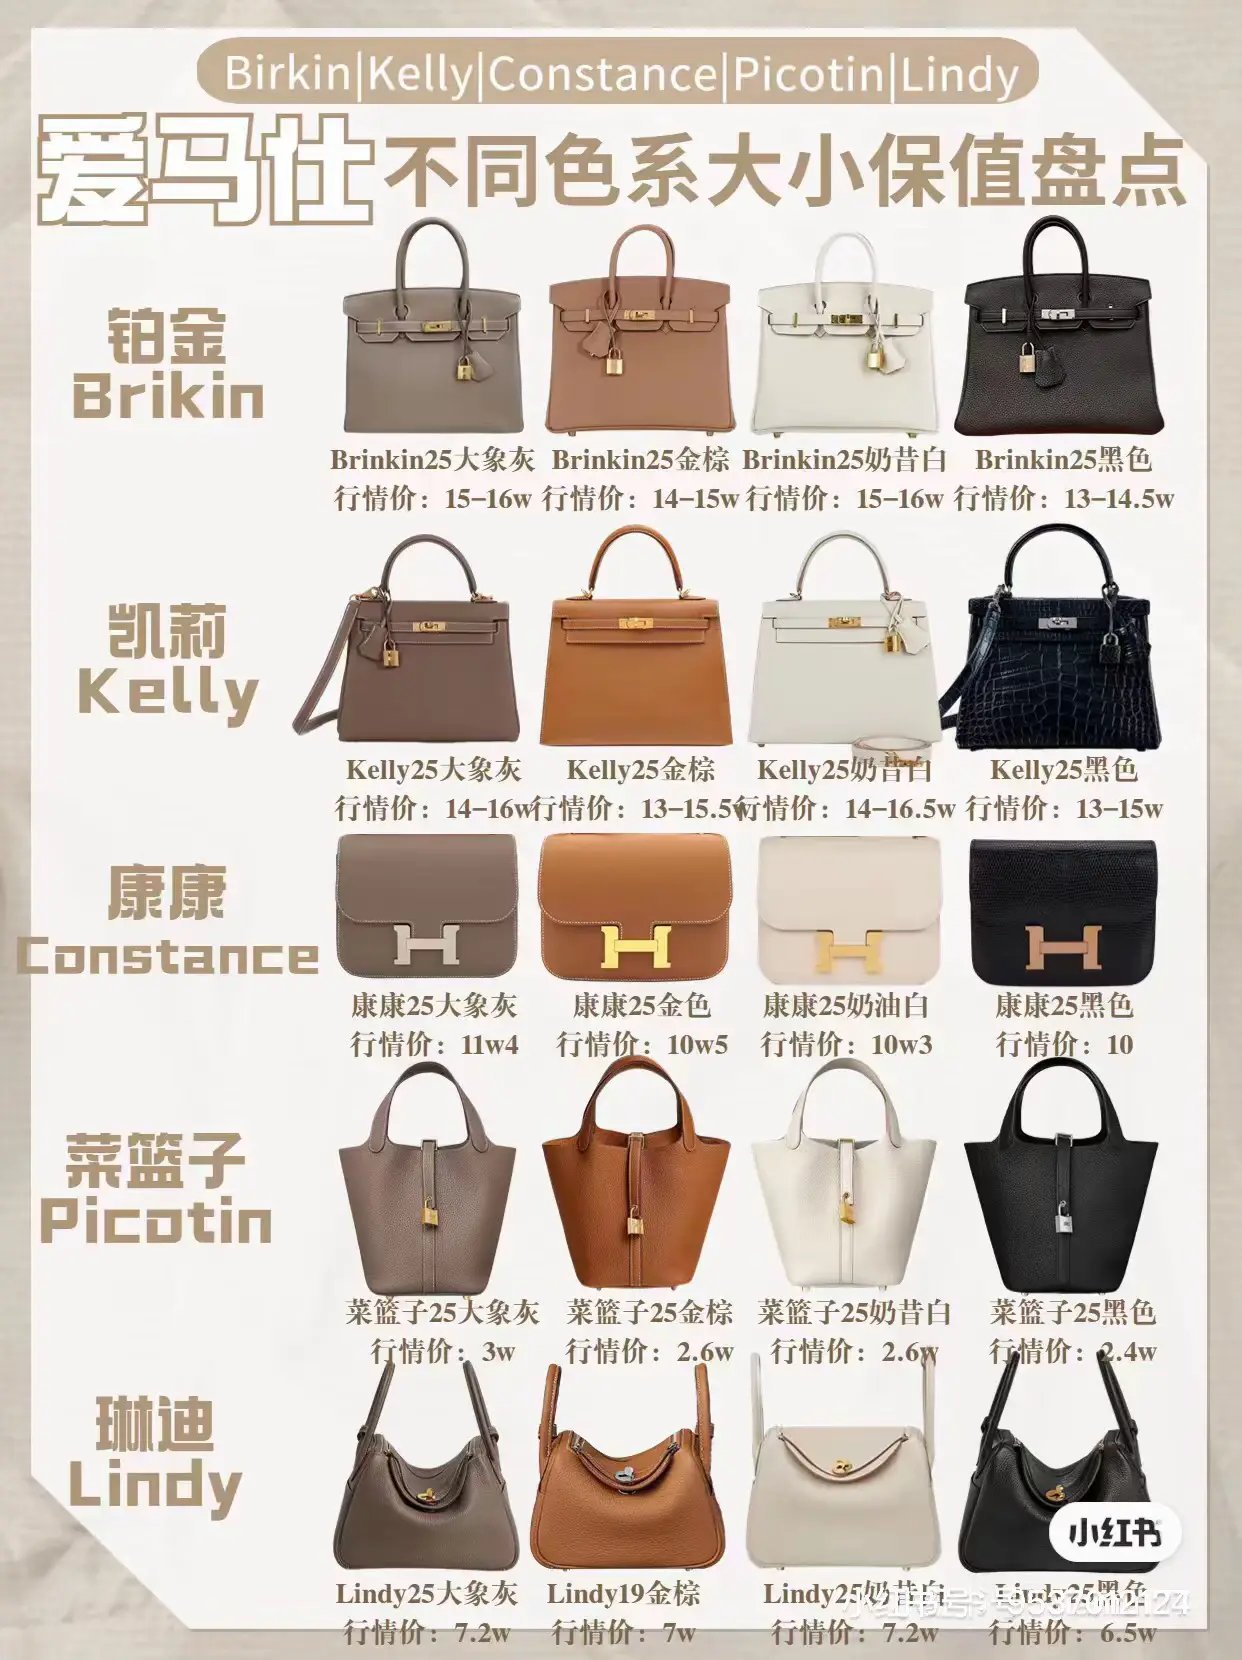 The Hermes handbag size guide